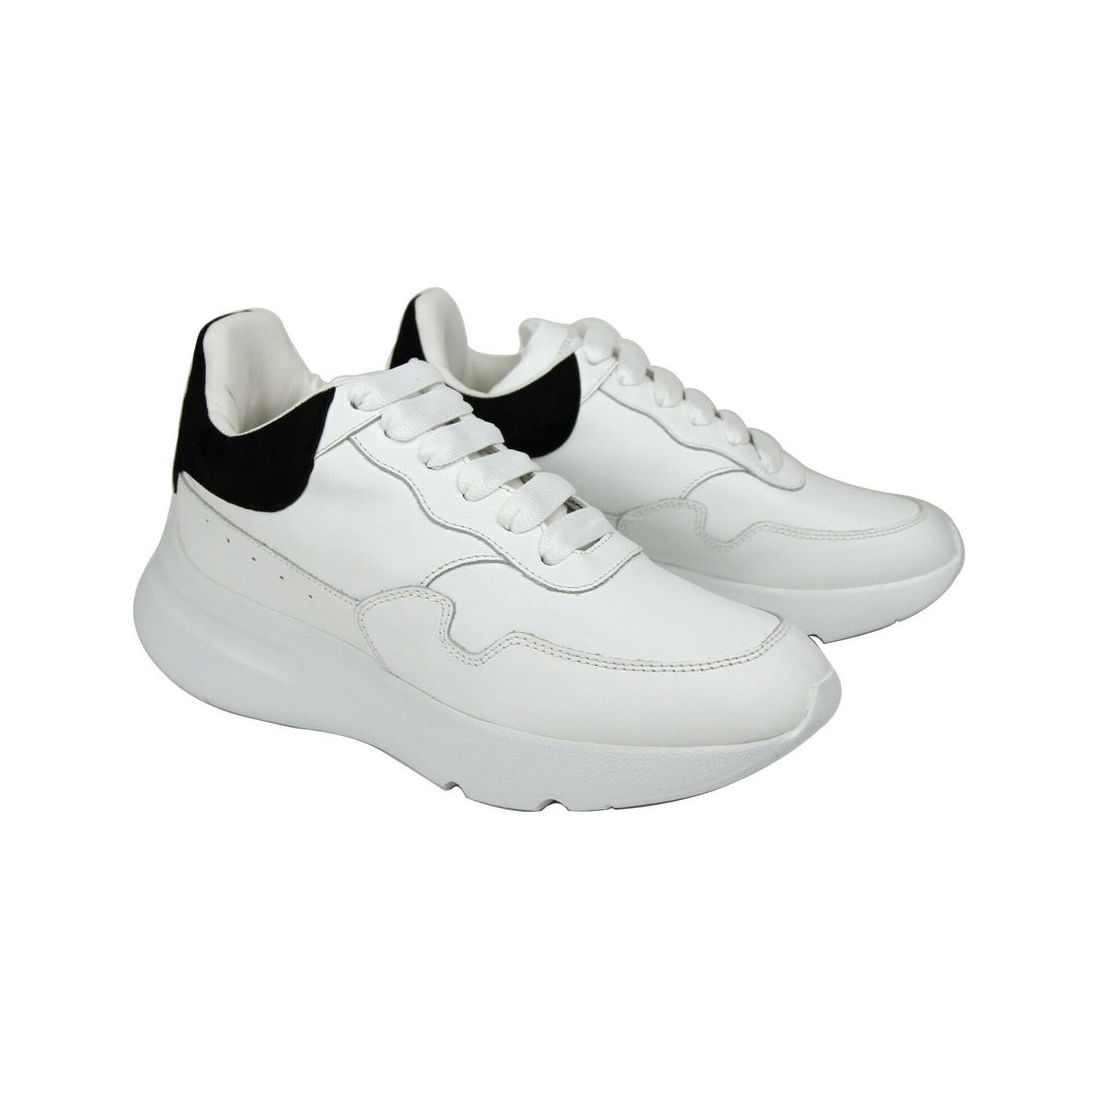 Alexander McQueen Alexander McQueen Women White Leather Suede Sneaker alexander-mcqueen-women-white-leather-suede-sneaker 508291-9061-39__4-2ecbad30-cc4.jpg